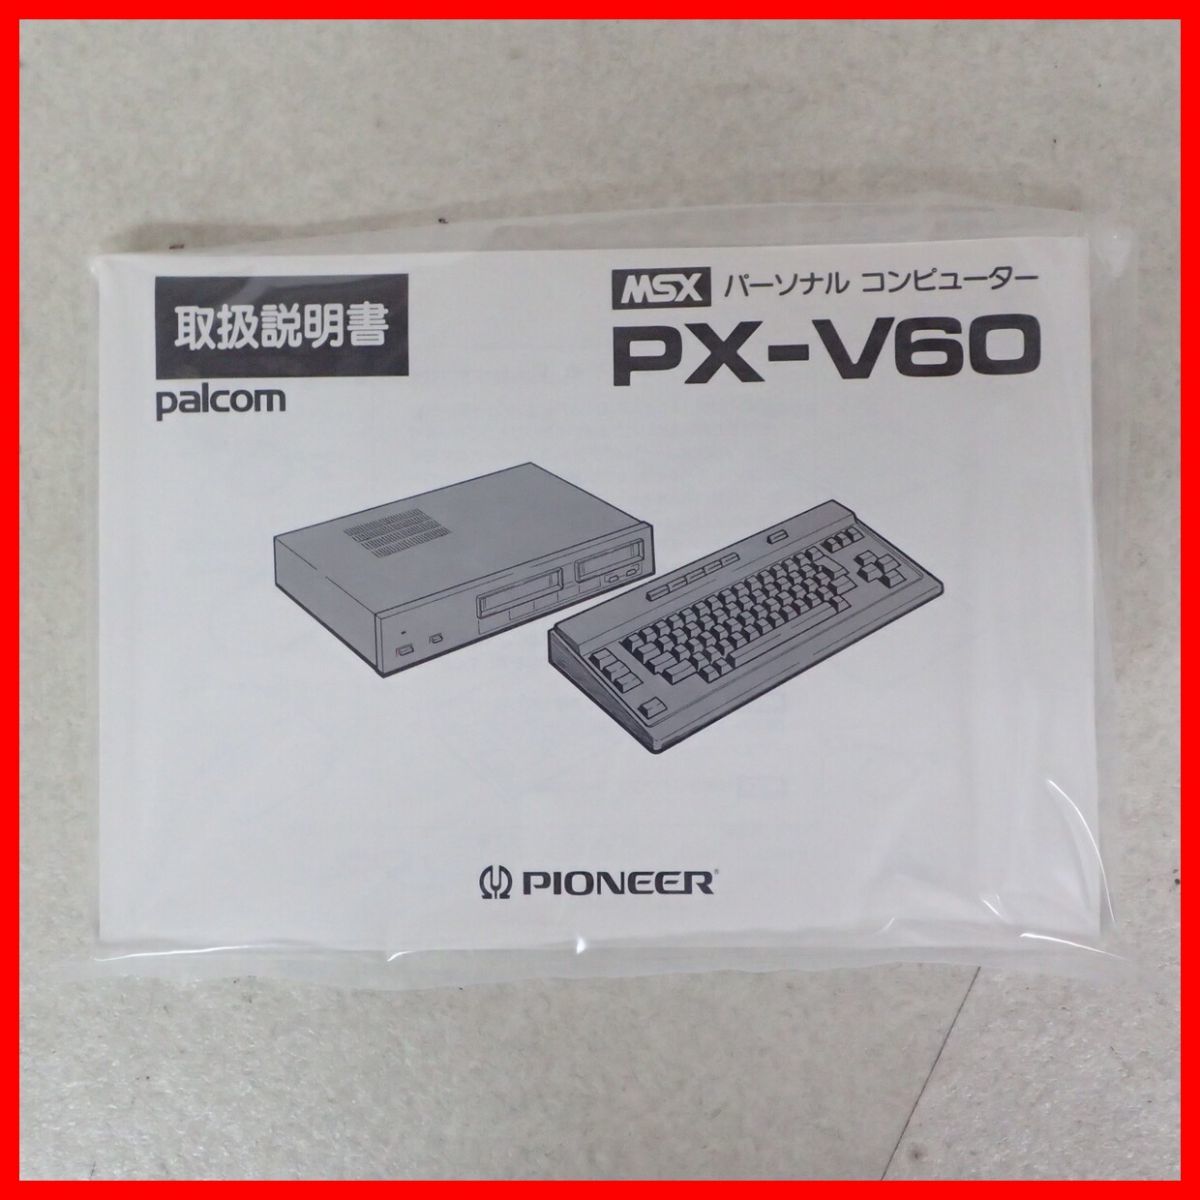 ◇未使用品 PIONEER パーソナルコンピュータ MSX PX-V60 パイオニア 箱説付【40_画像9